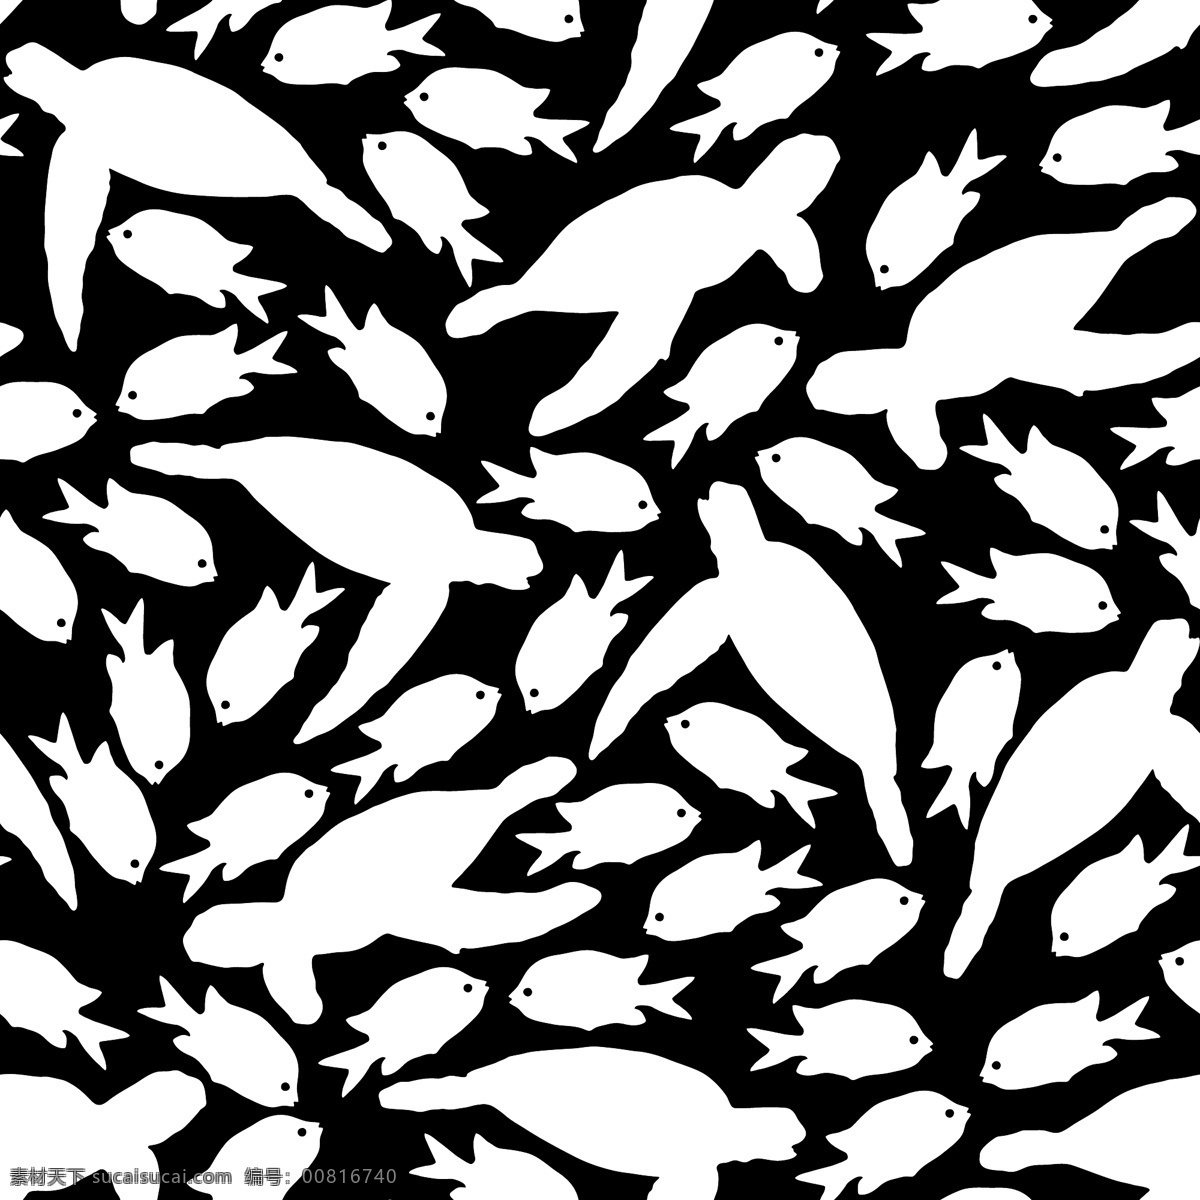 夏季 海洋 动物 水彩 diy 纹理 图案 黑色 条纹 卡通 设计素材 花纹 海龟 小鱼简约 矢量 平面素材